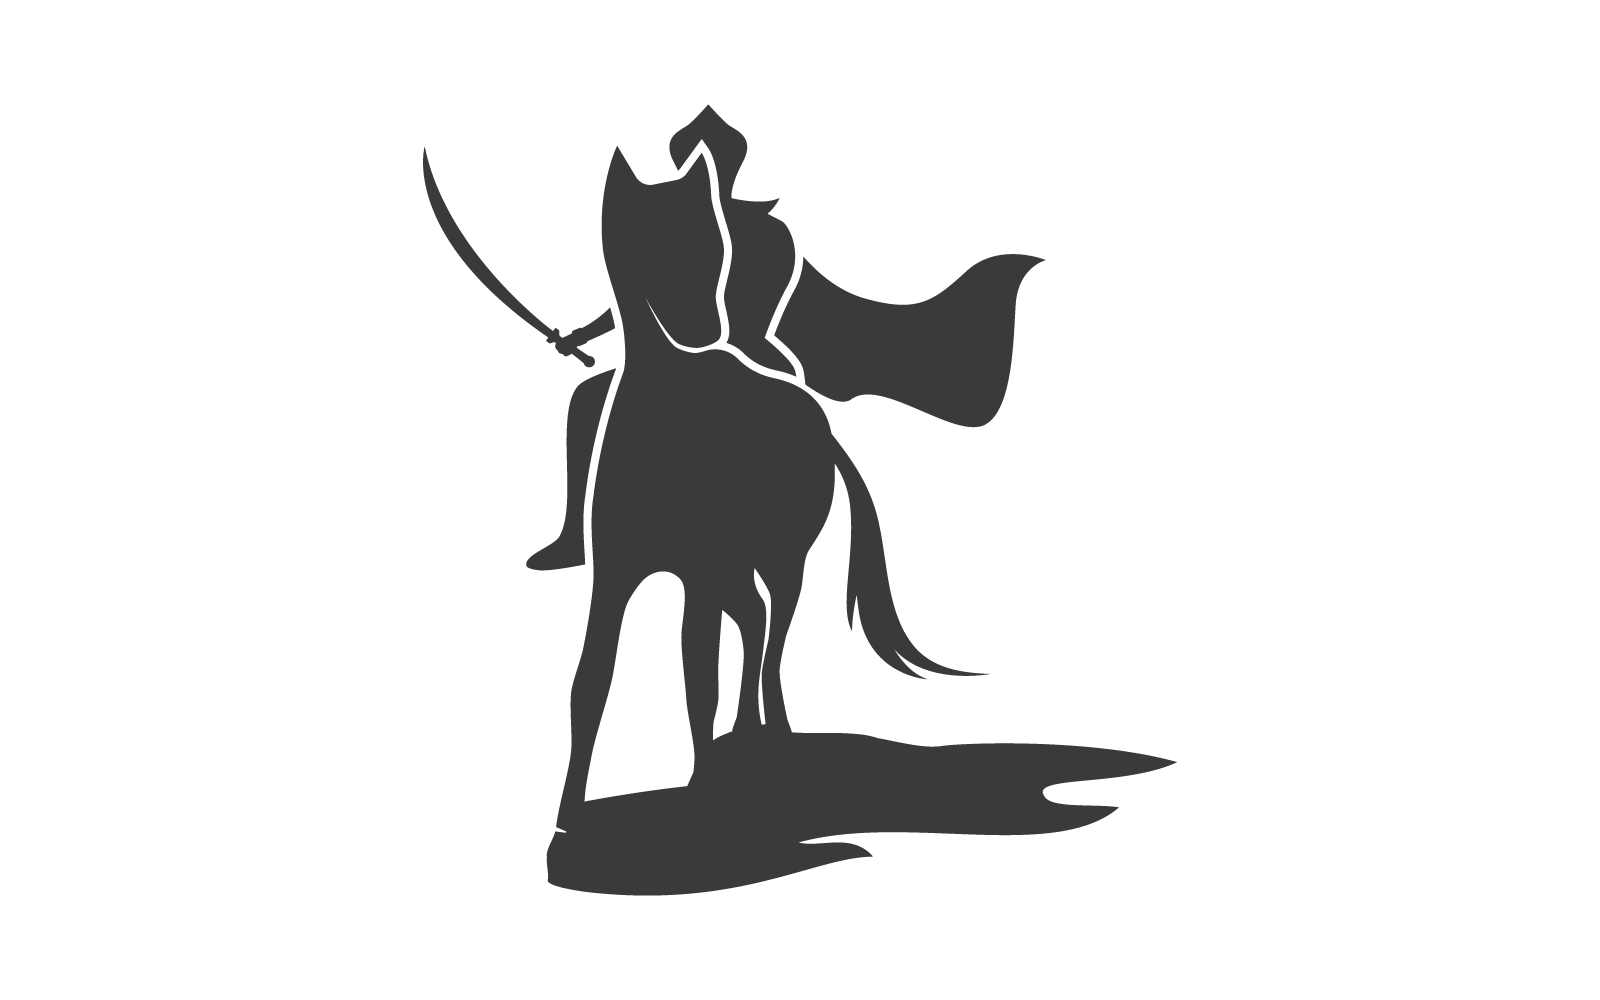 Horse knight hero logo illustration templat